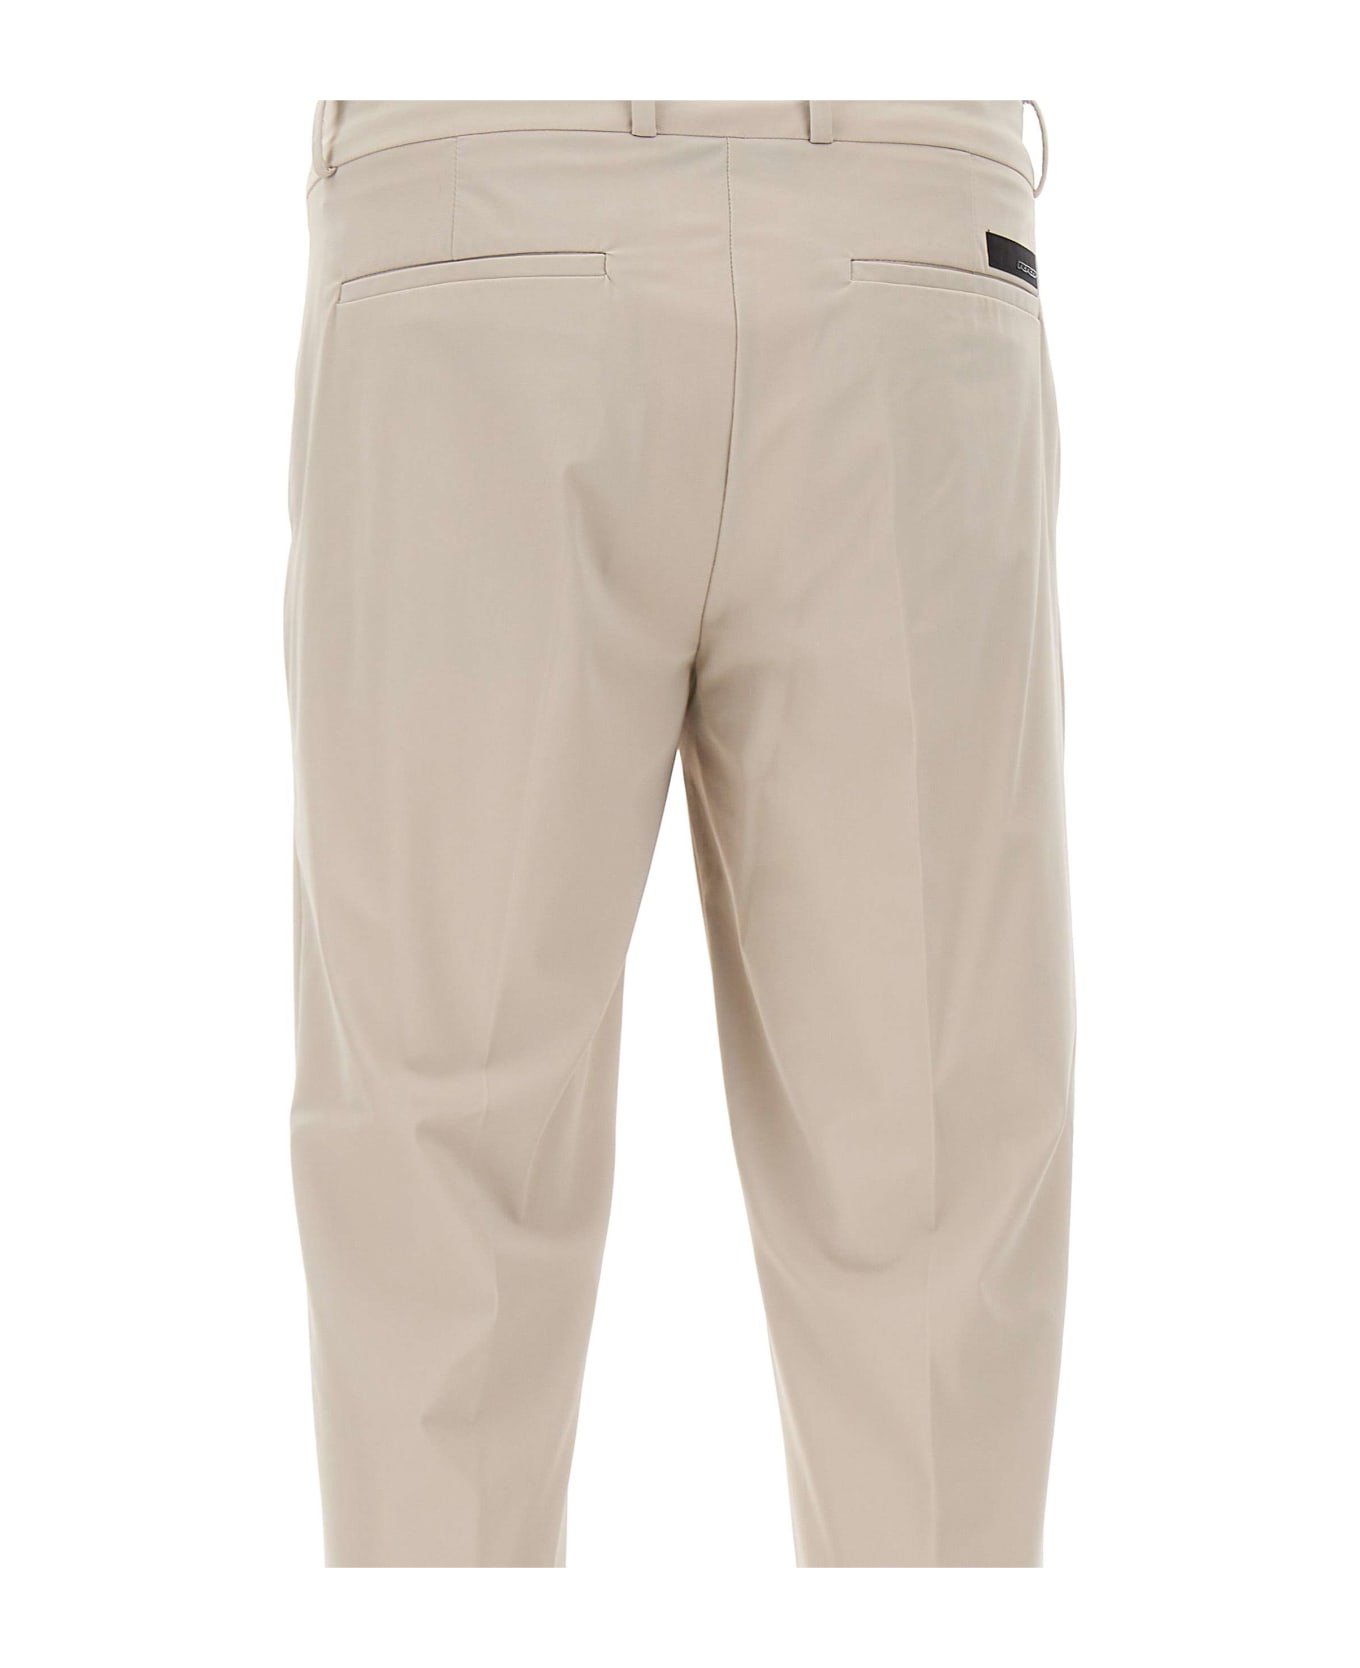 RRD - Roberto Ricci Design Men's Trousers 'revo Chino' - White